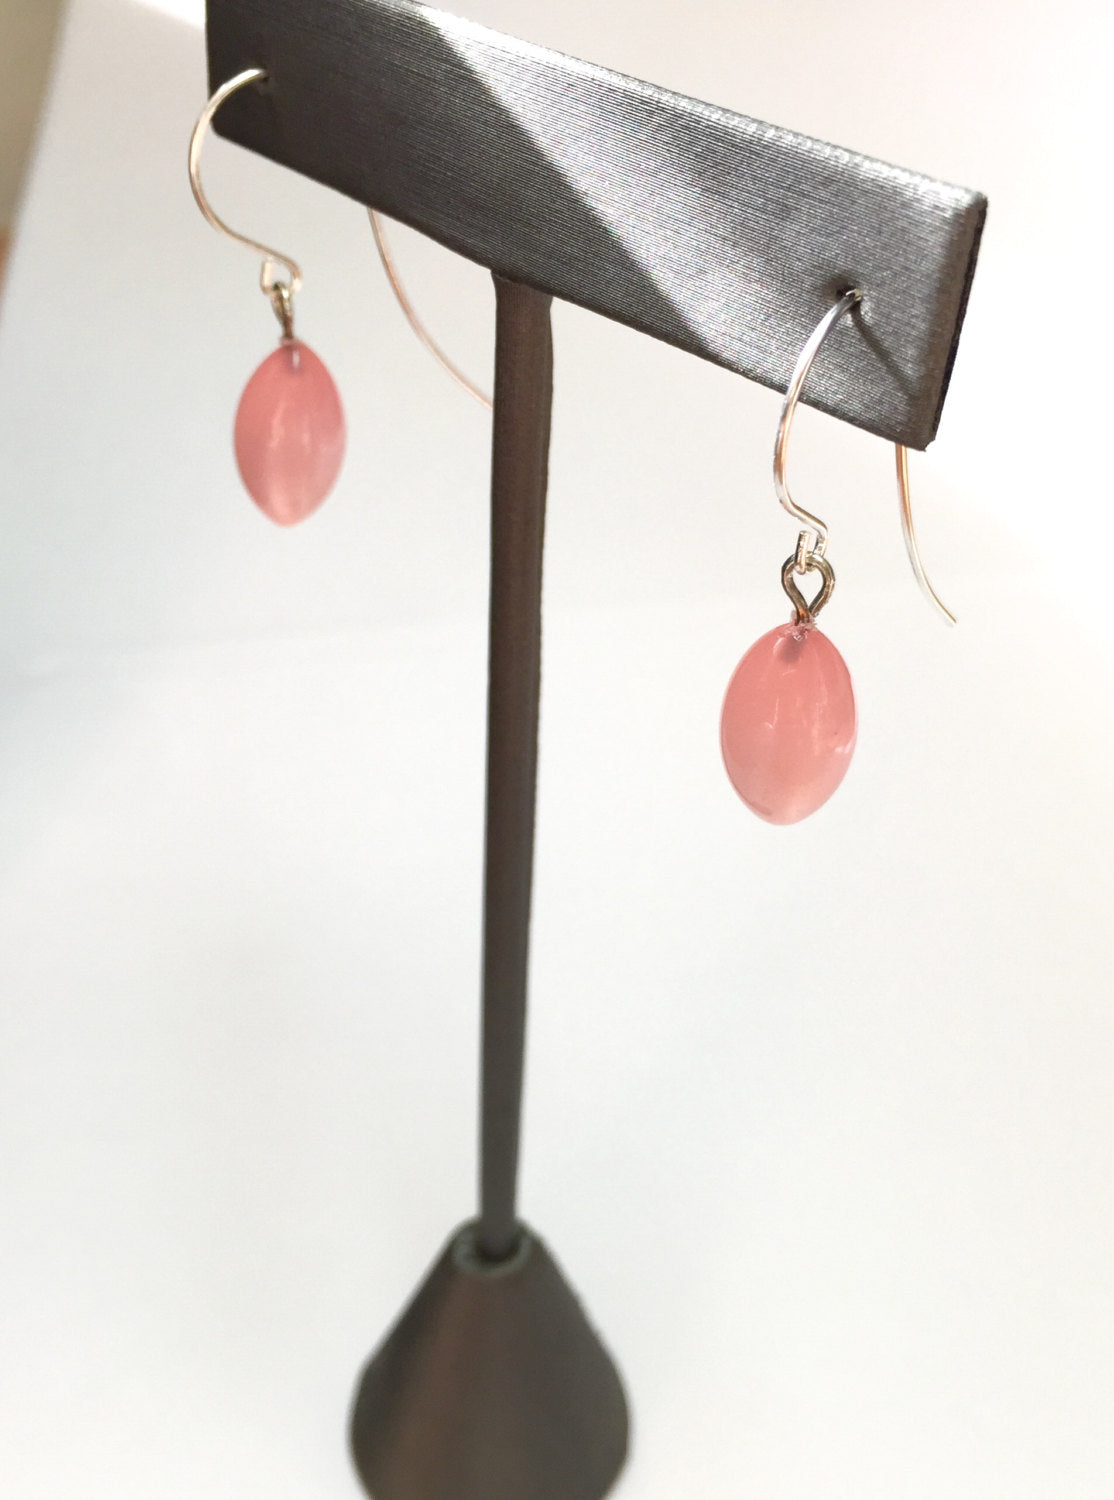 leetie pink earrings